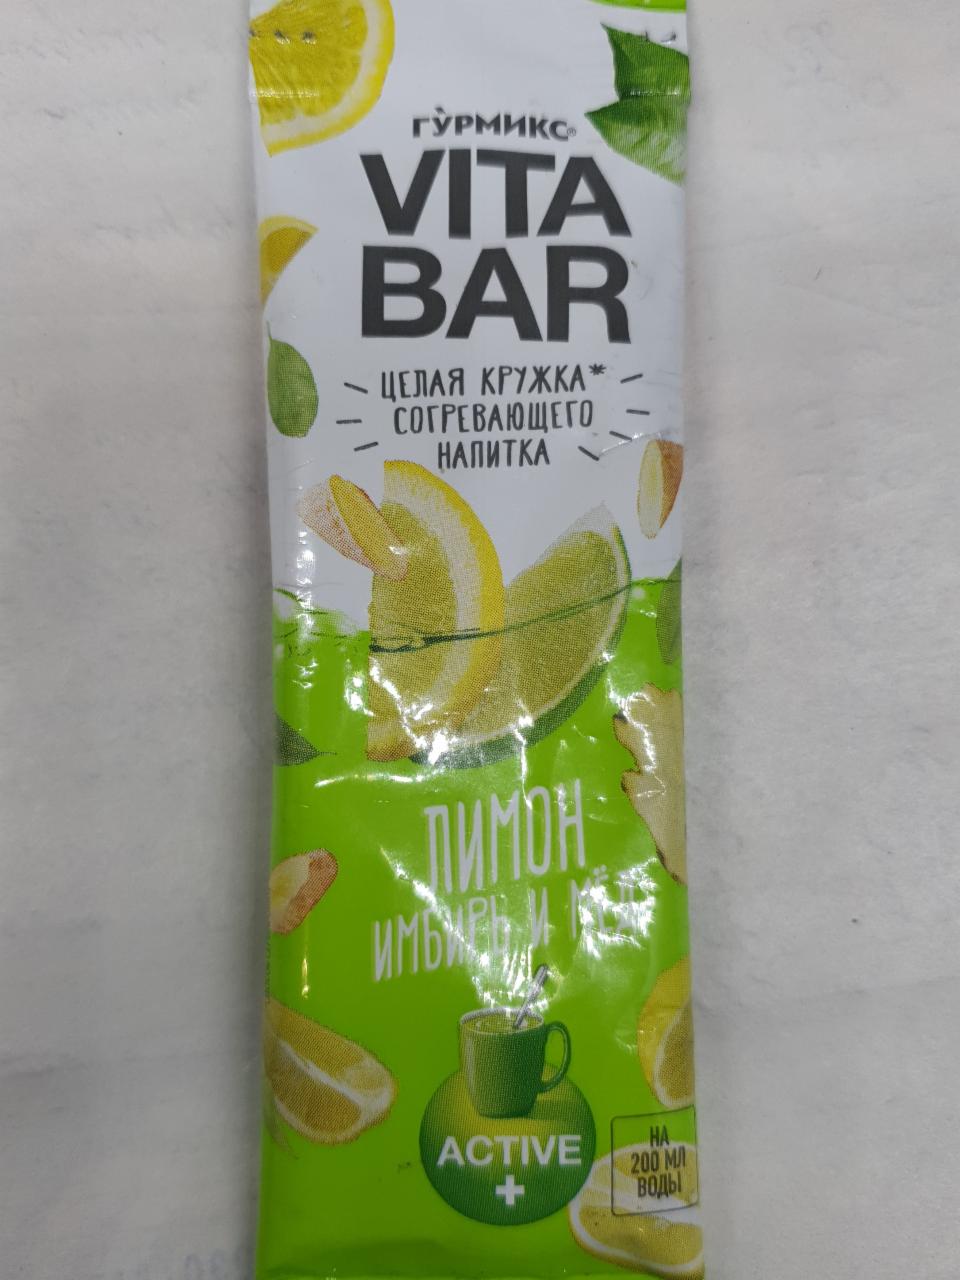 Фото - напиток лимон имбирь и мед Vita Bar Гурмикс